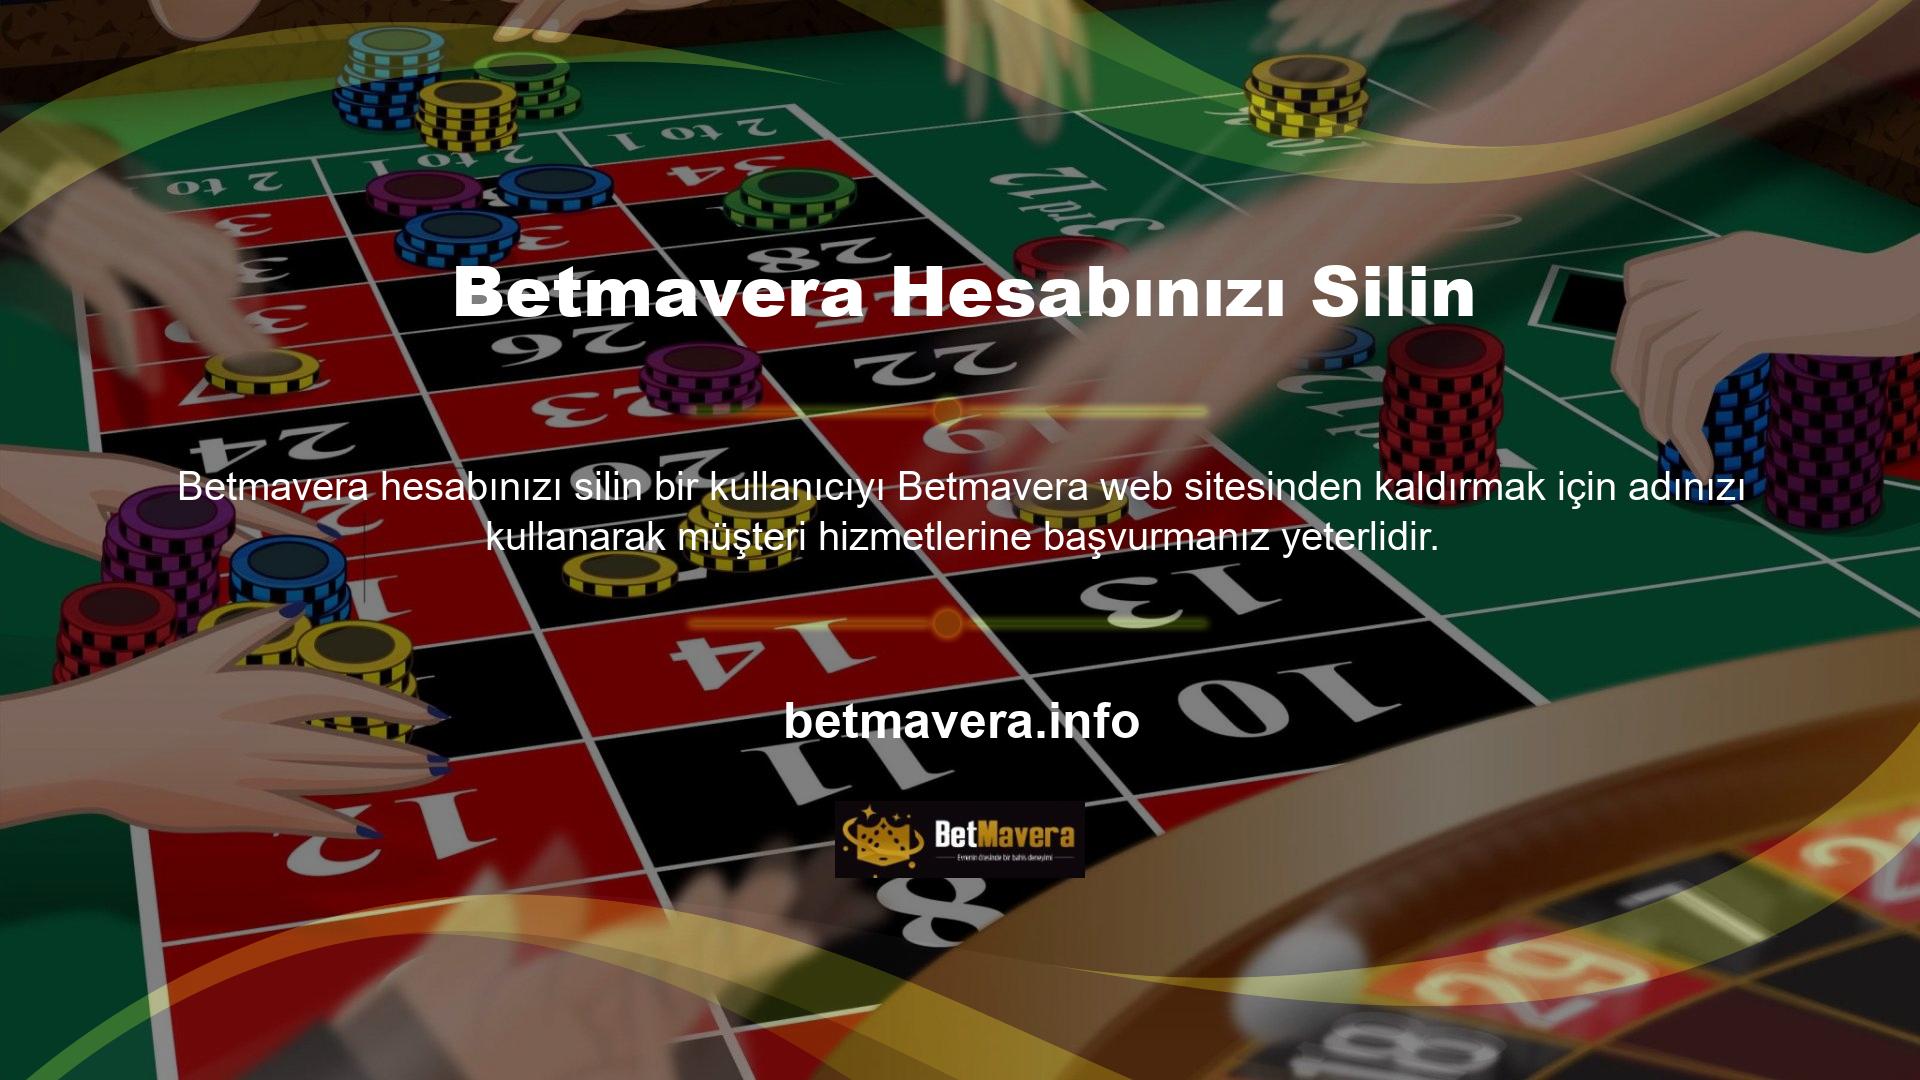 Betmavera müşteri hizmetleriyle iletişime geçmek için Betmavera web sitesini ziyaret edebilir ve web sitesi sayfasının sol üst köşesindeki "Canlı Destek" butonuna tıklayarak canlı destekle iletişime geçme seçeneğini seçebilirsiniz